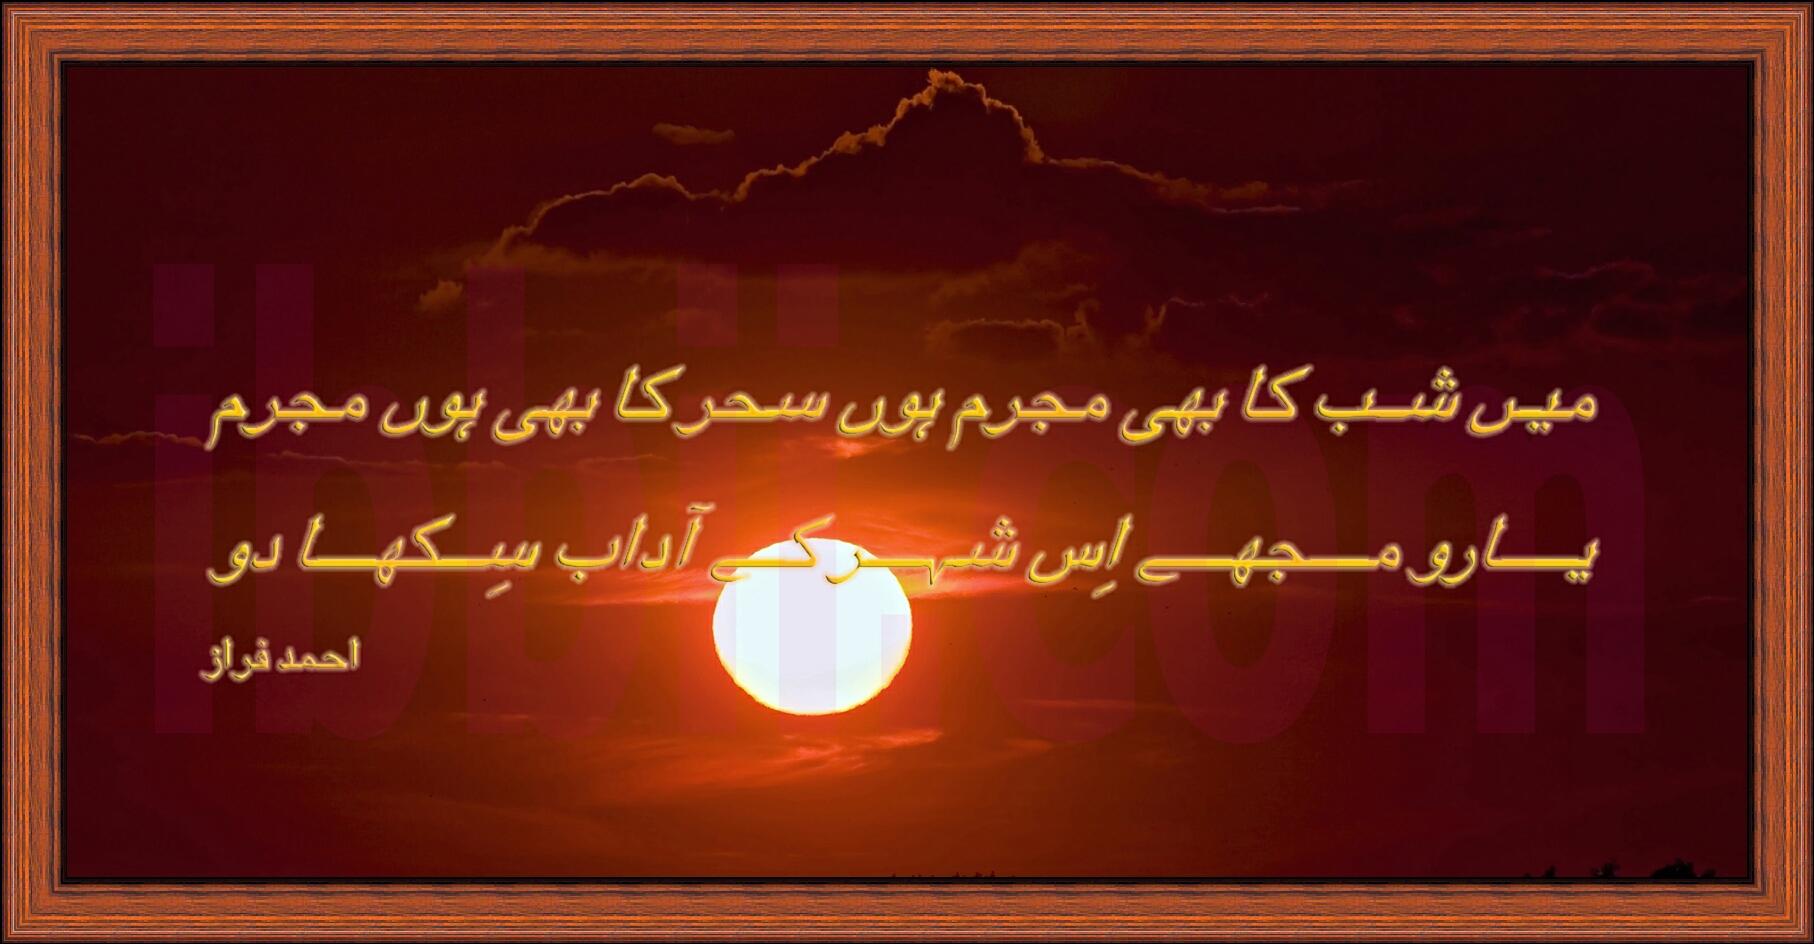 Ahmad Faraz - Urdu Poetry Faraz , HD Wallpaper & Backgrounds